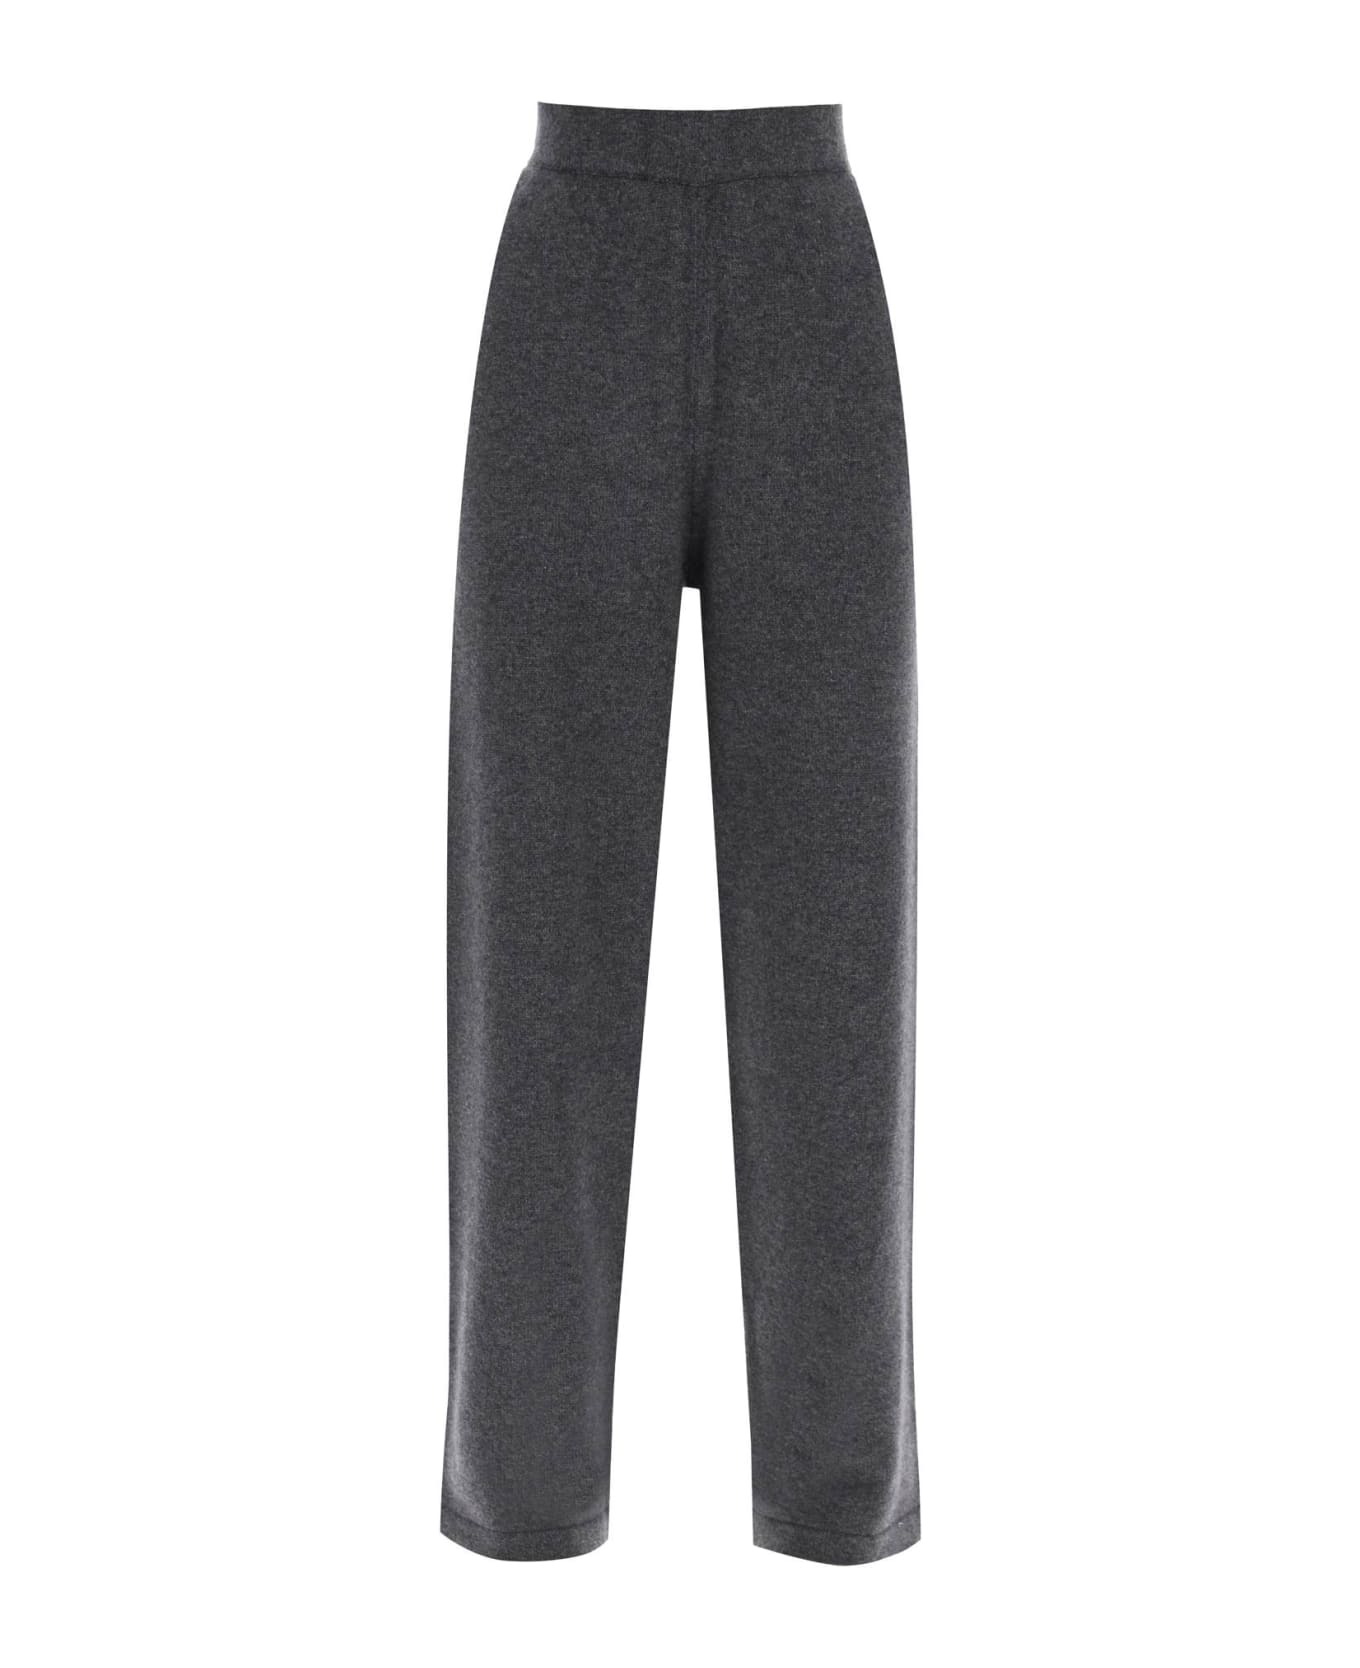 Golden Goose Cashmere Knit Pants - GREY MELANGE (Grey)